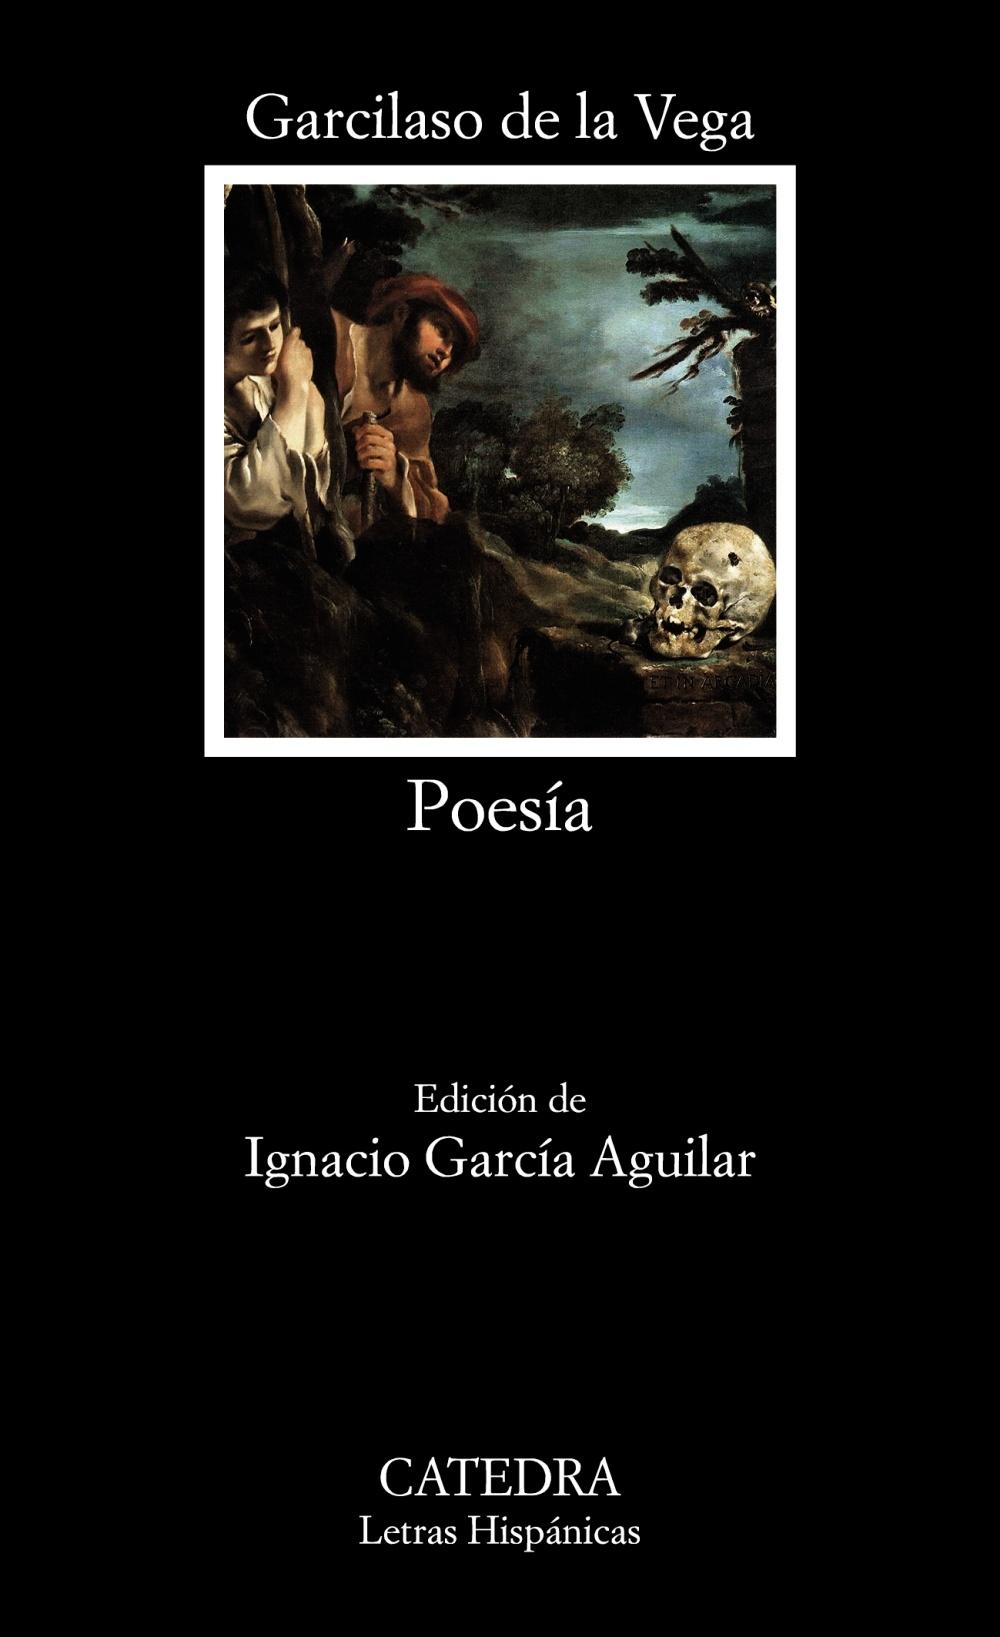 Poesía "(Garcilaso de la Vega)"